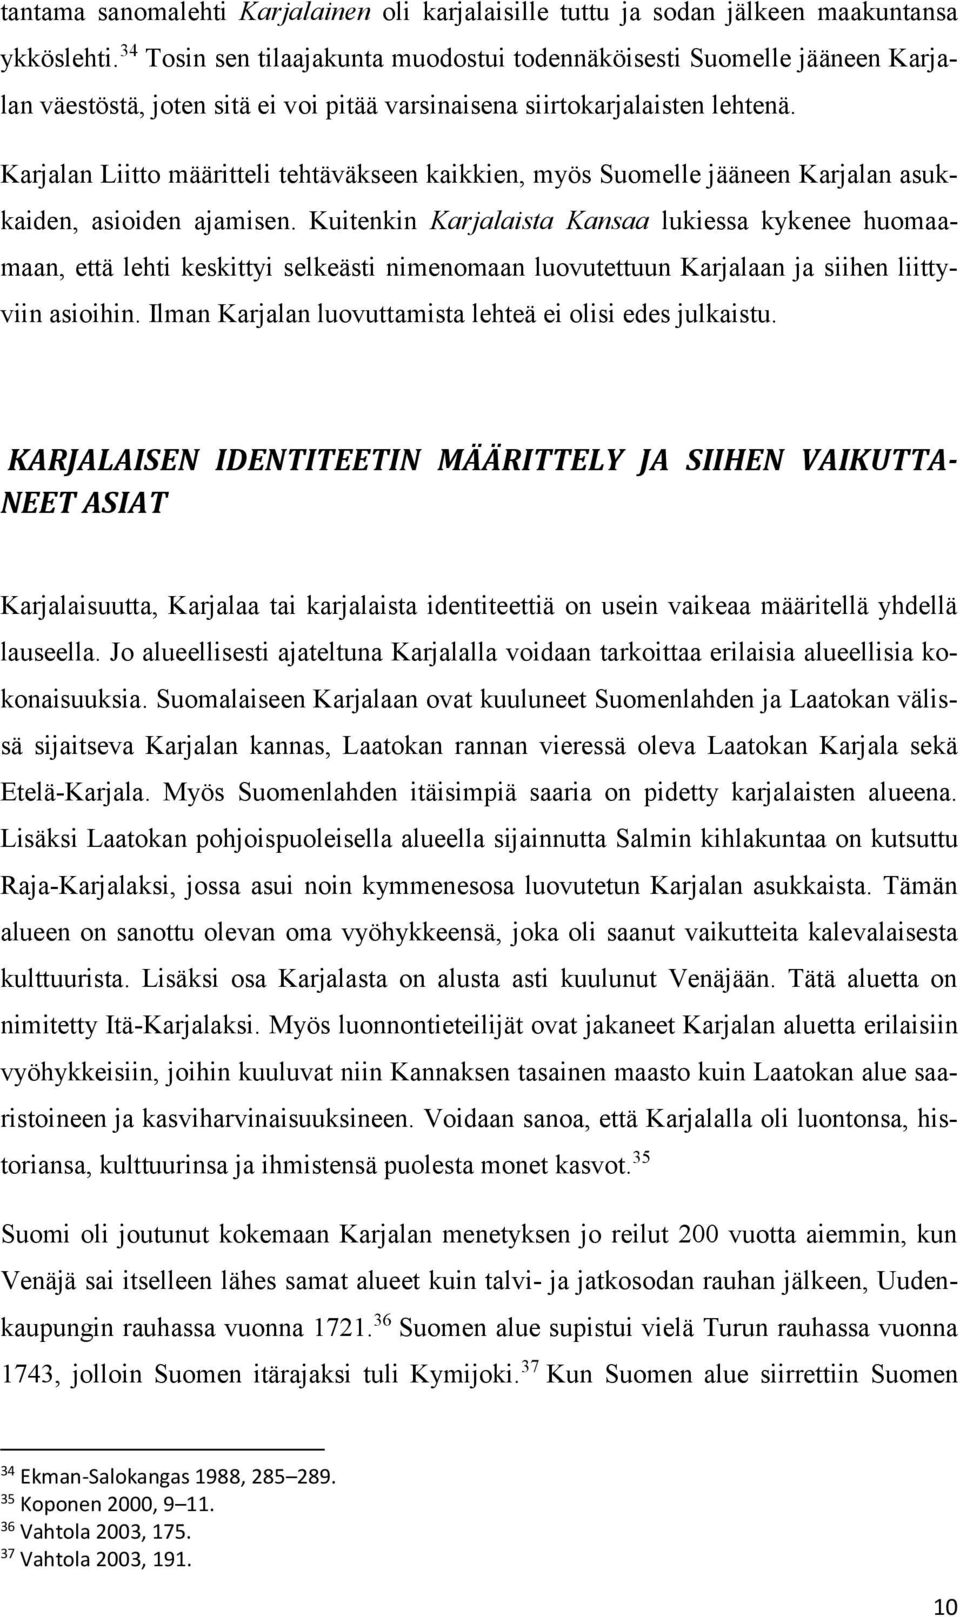 Karjalan Liitto määritteli tehtäväkseen kaikkien, myös Suomelle jääneen Karjalan asukkaiden, asioiden ajamisen.